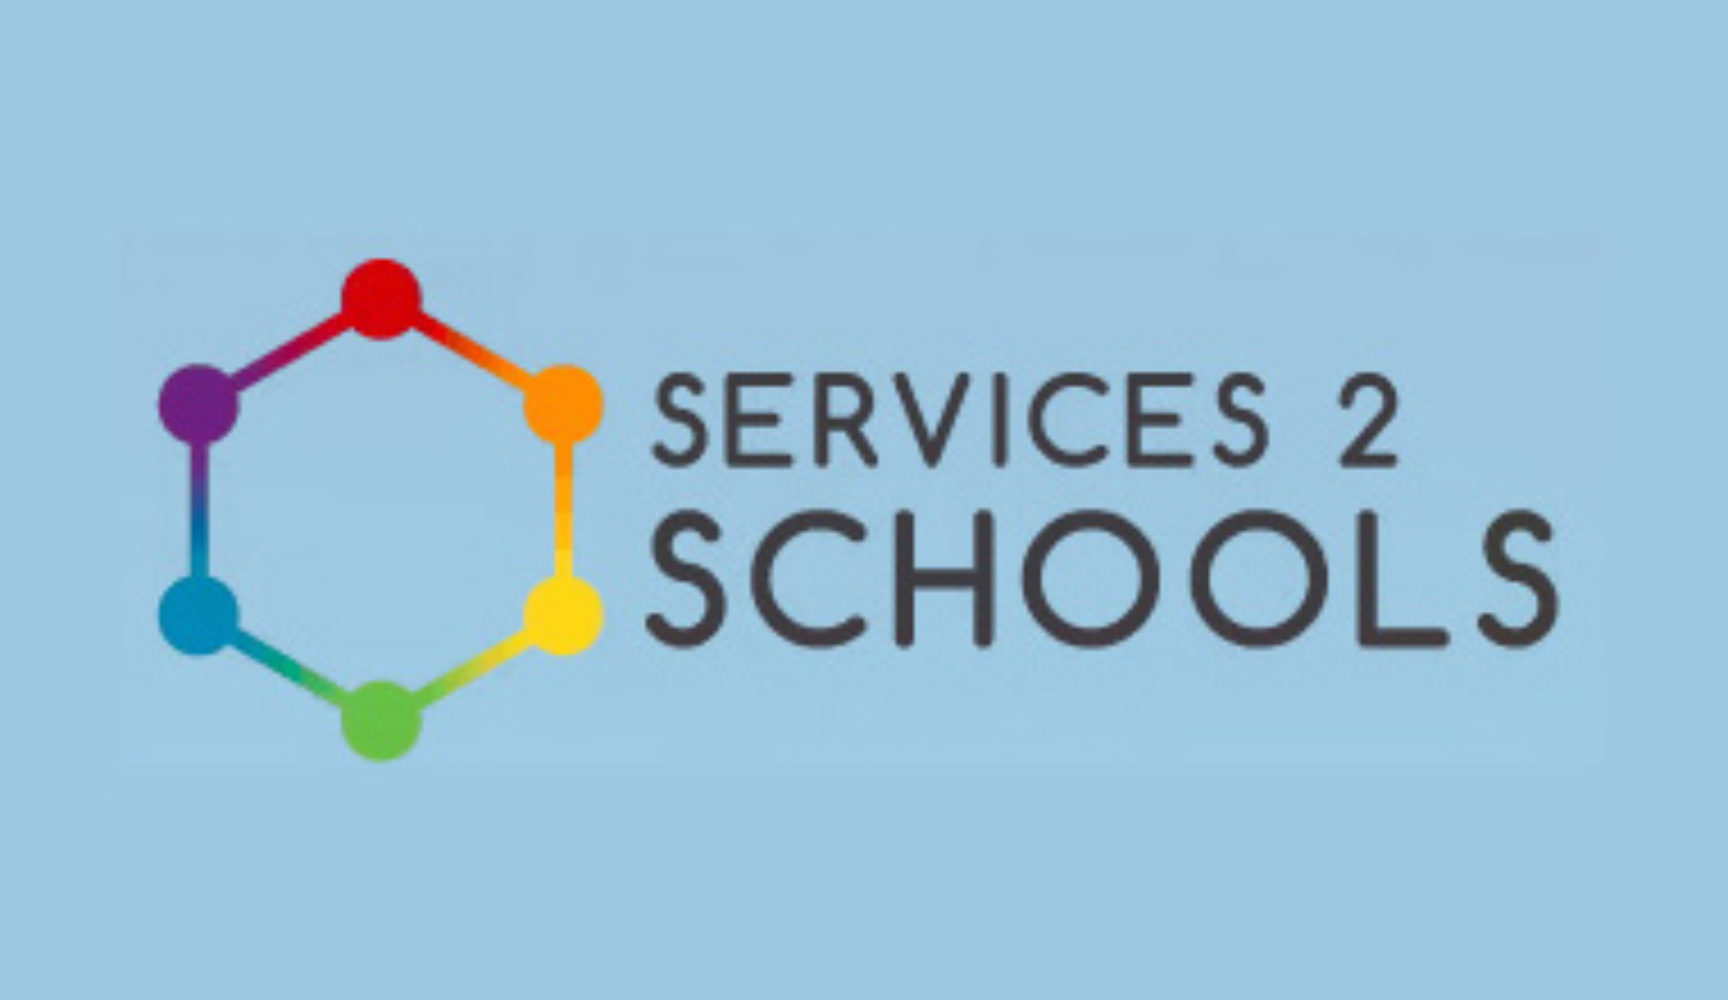 Services 2 Schools logo